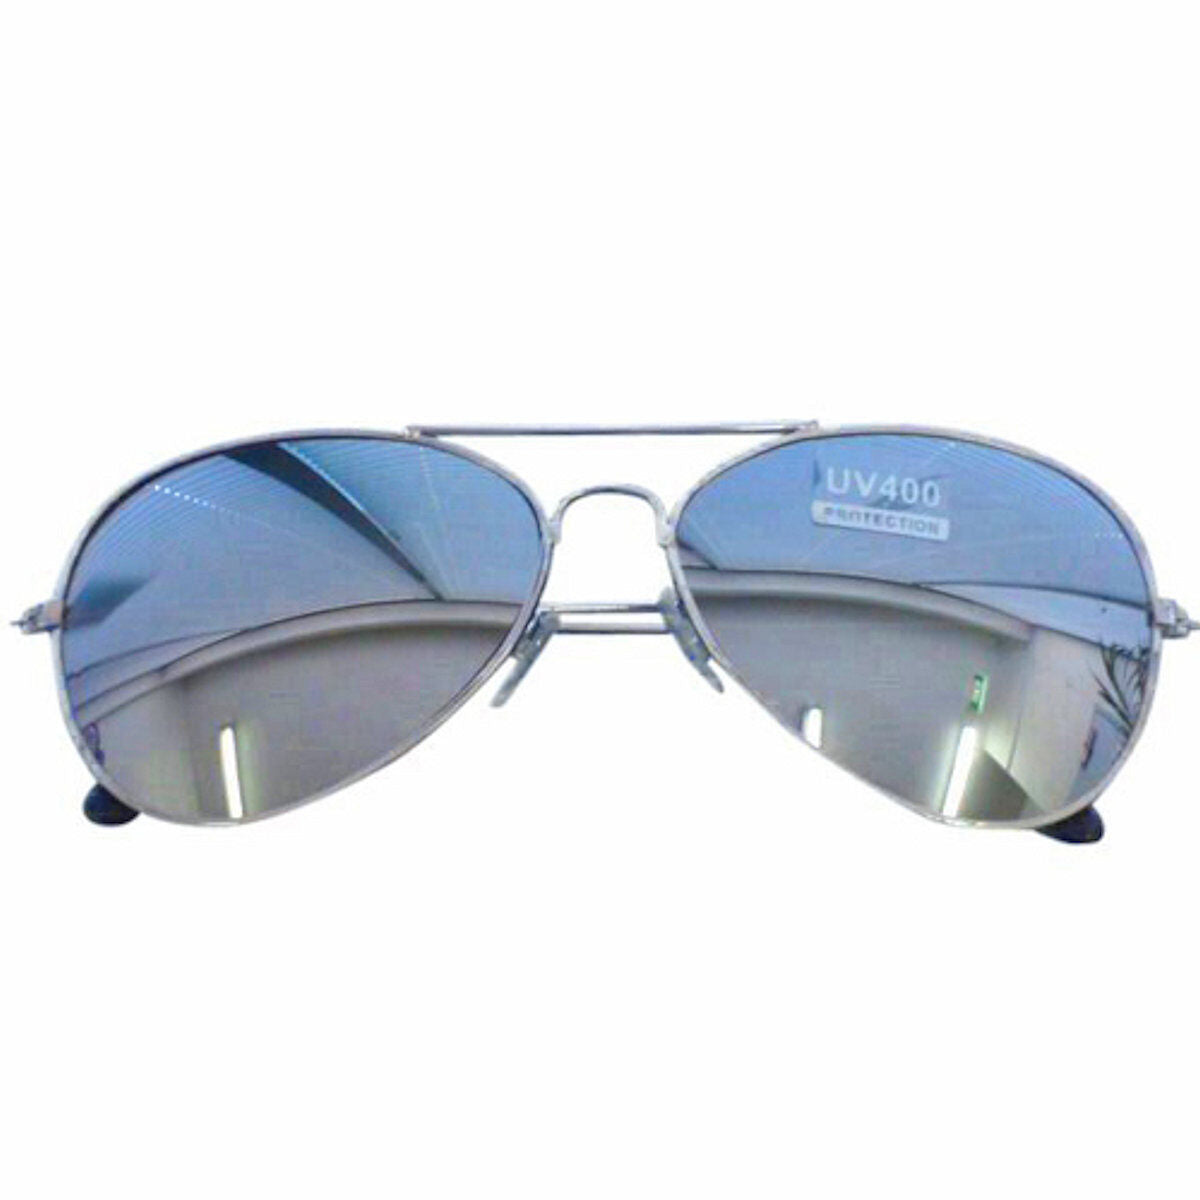 Aviator Glasses Silver Mirror Lenses UV 400 Top Gun Police Costume Accessory